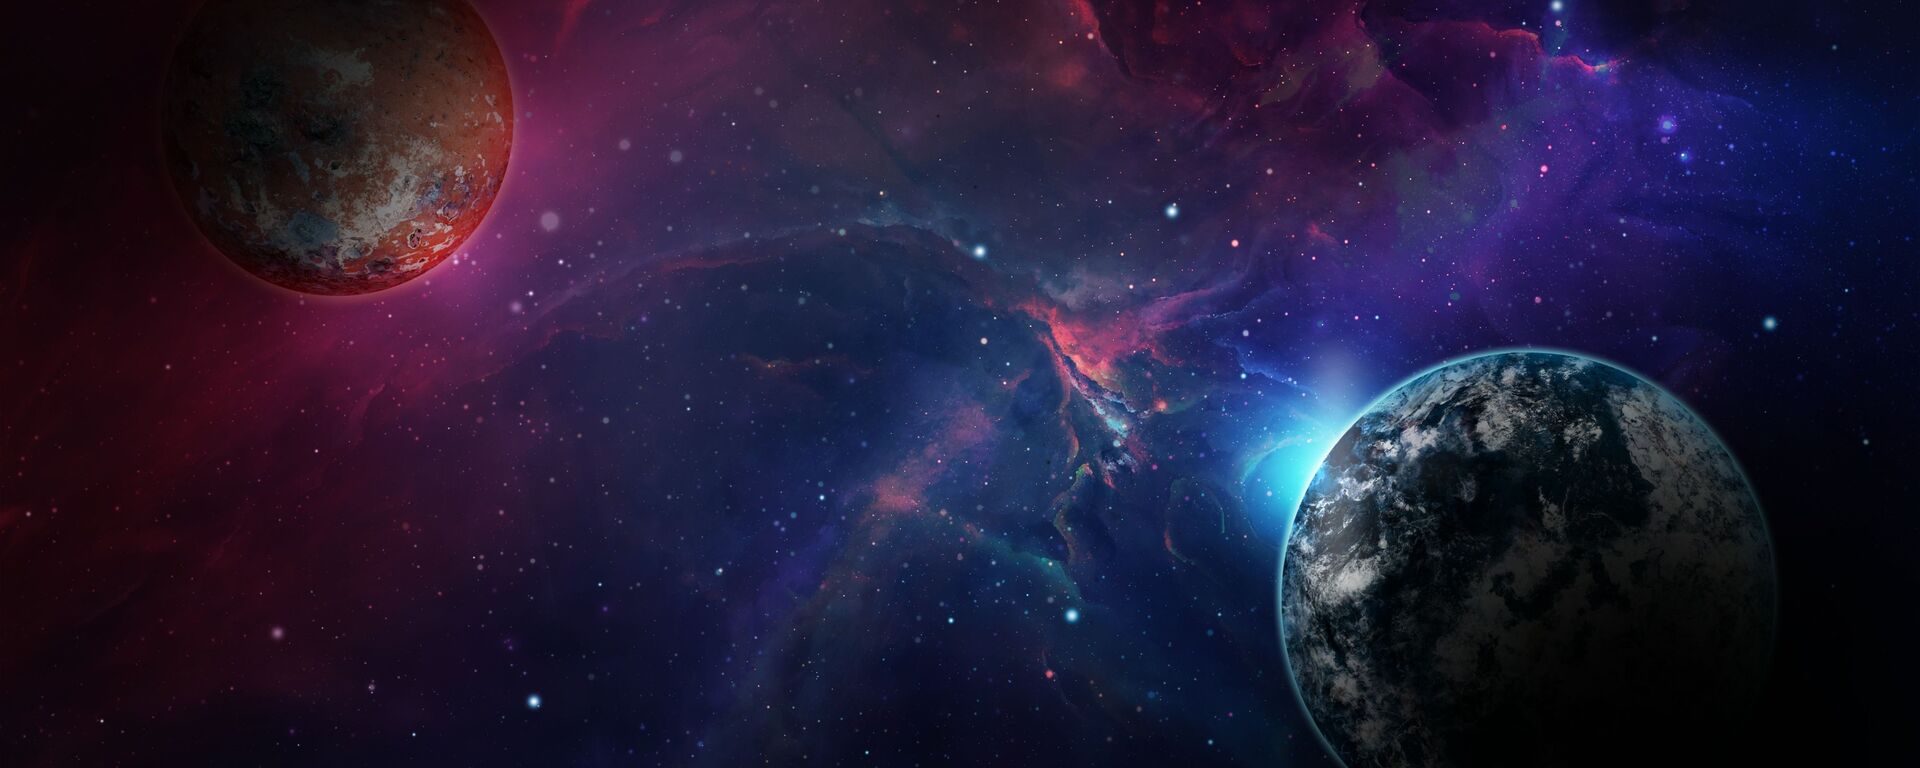 صورة خيالية لكوكب الأرض بجانب كوكب آخر  - سبوتنيك عربي, 1920, 18.01.2022